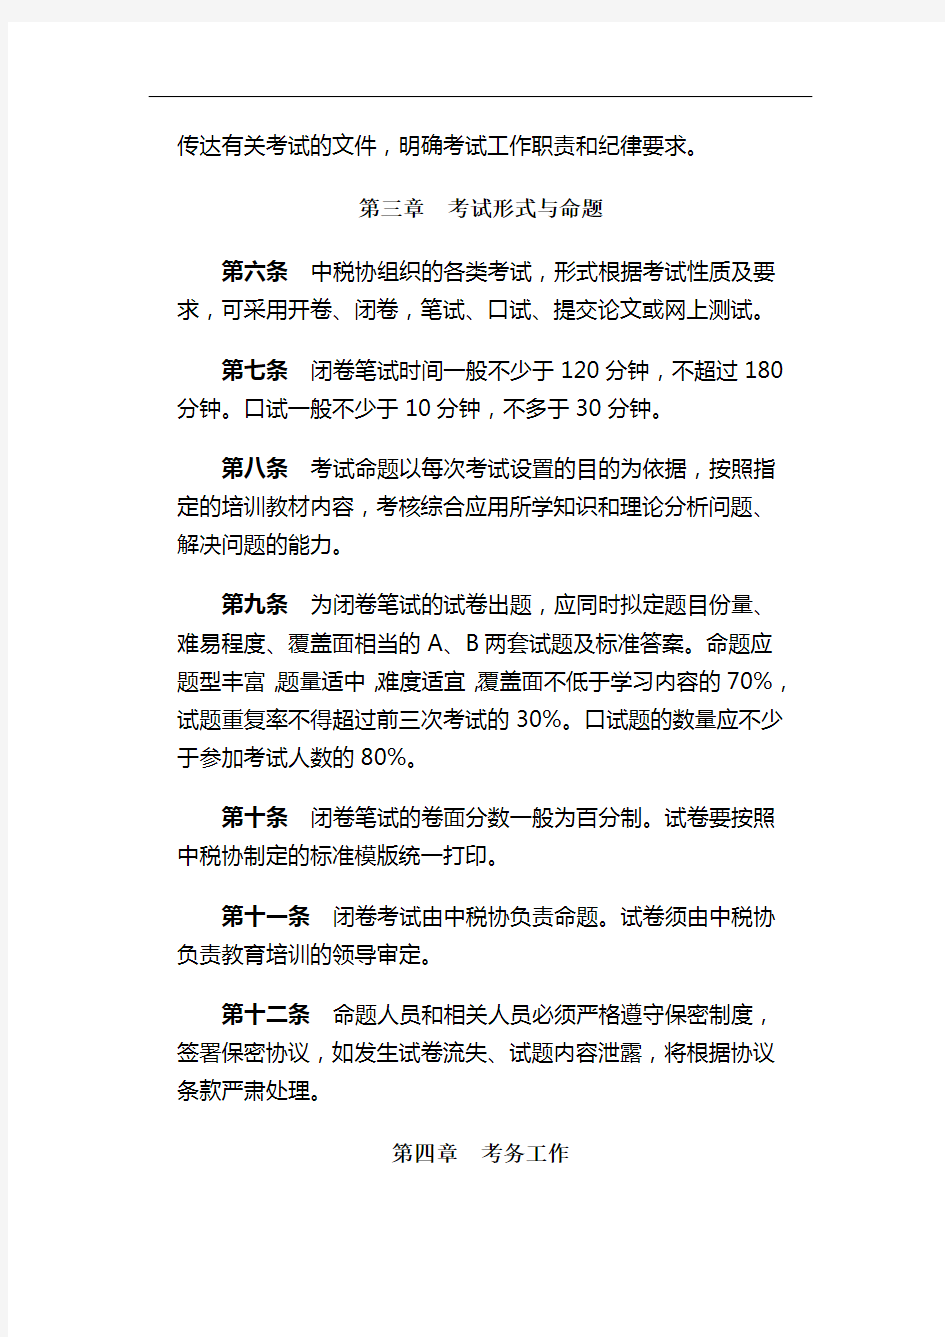 中国注册税务师协会考试管理规定(试行)